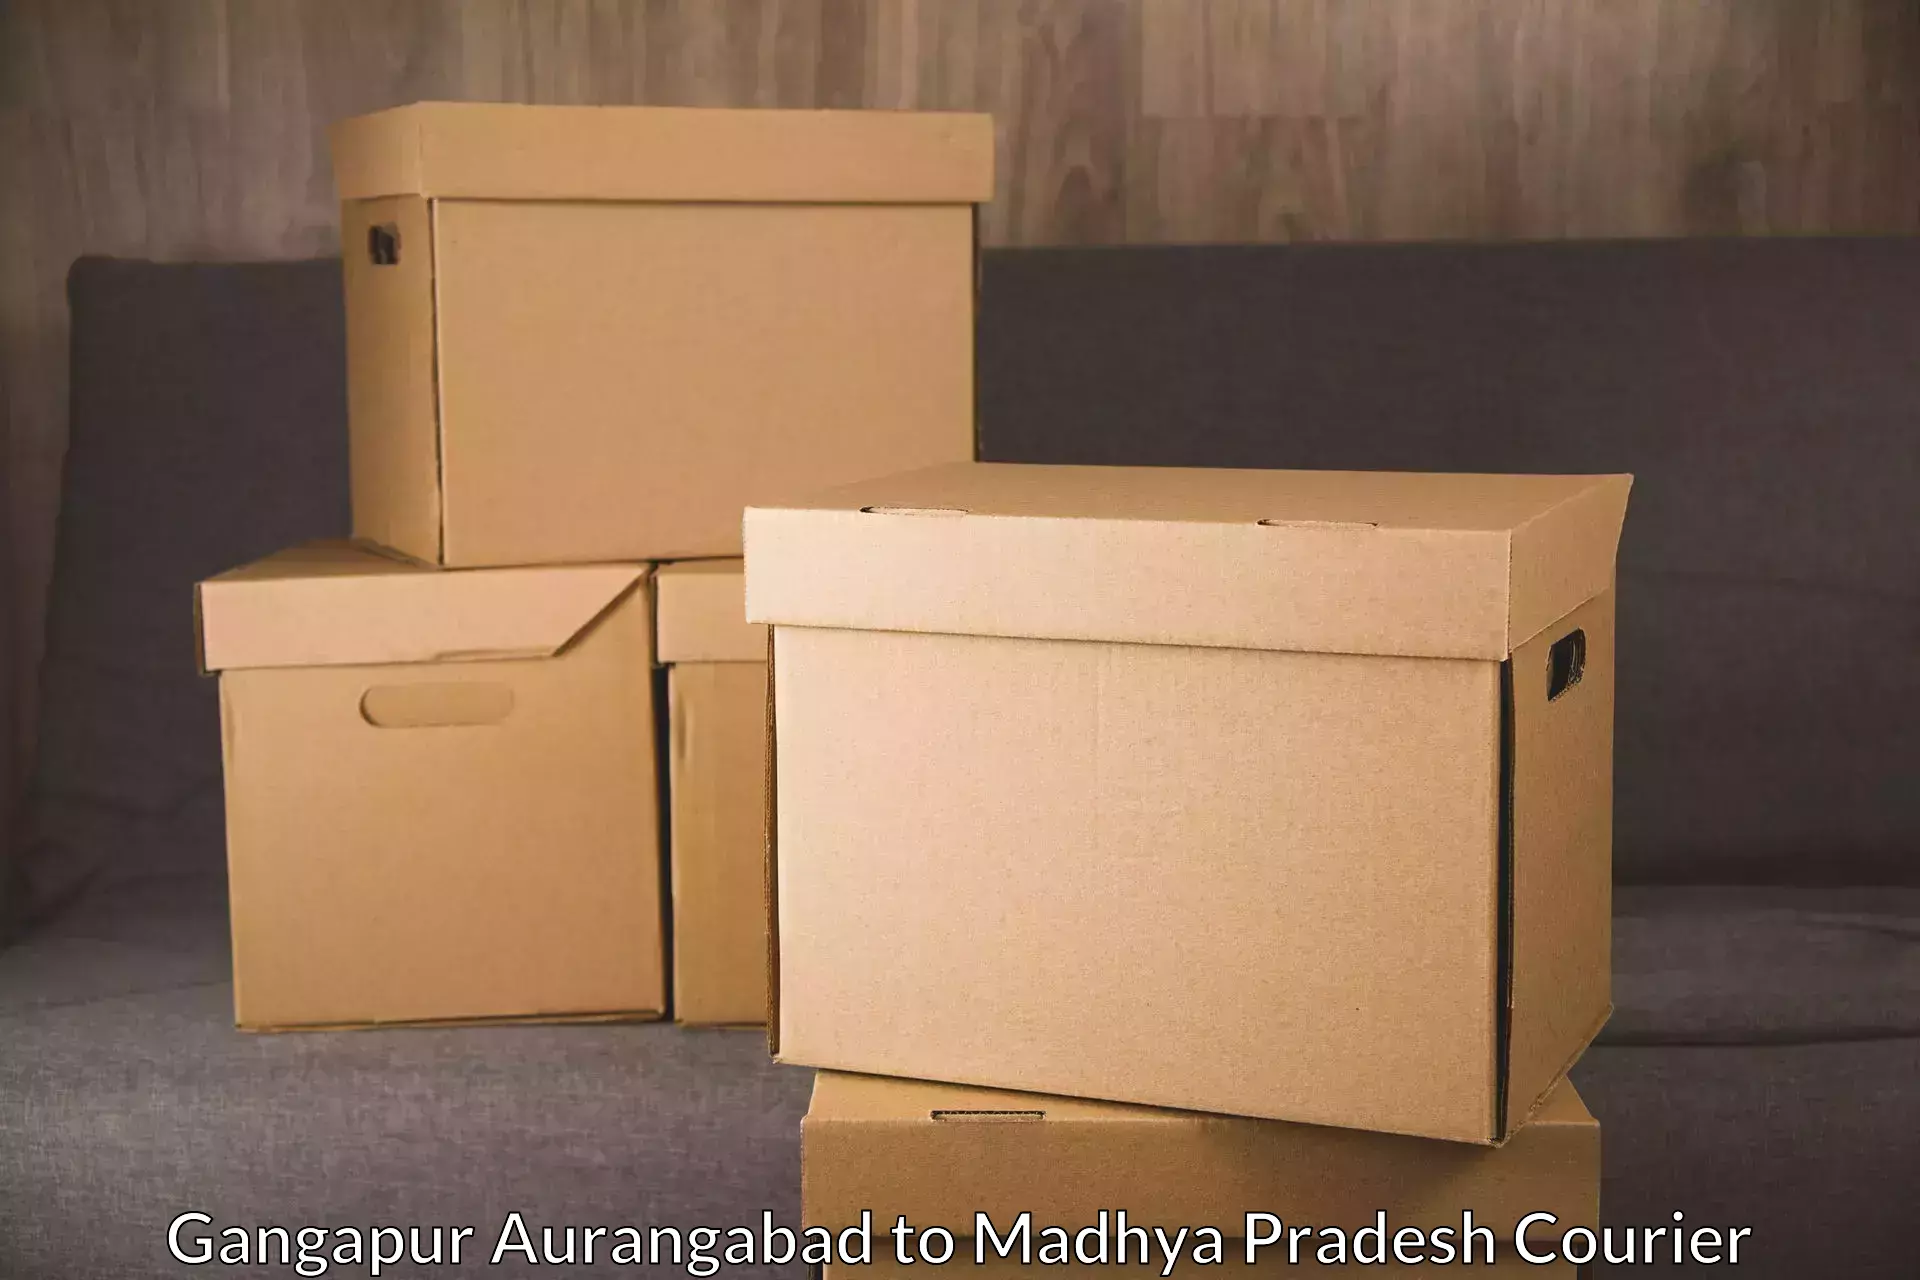 High-capacity parcel service Gangapur Aurangabad to Lashkar